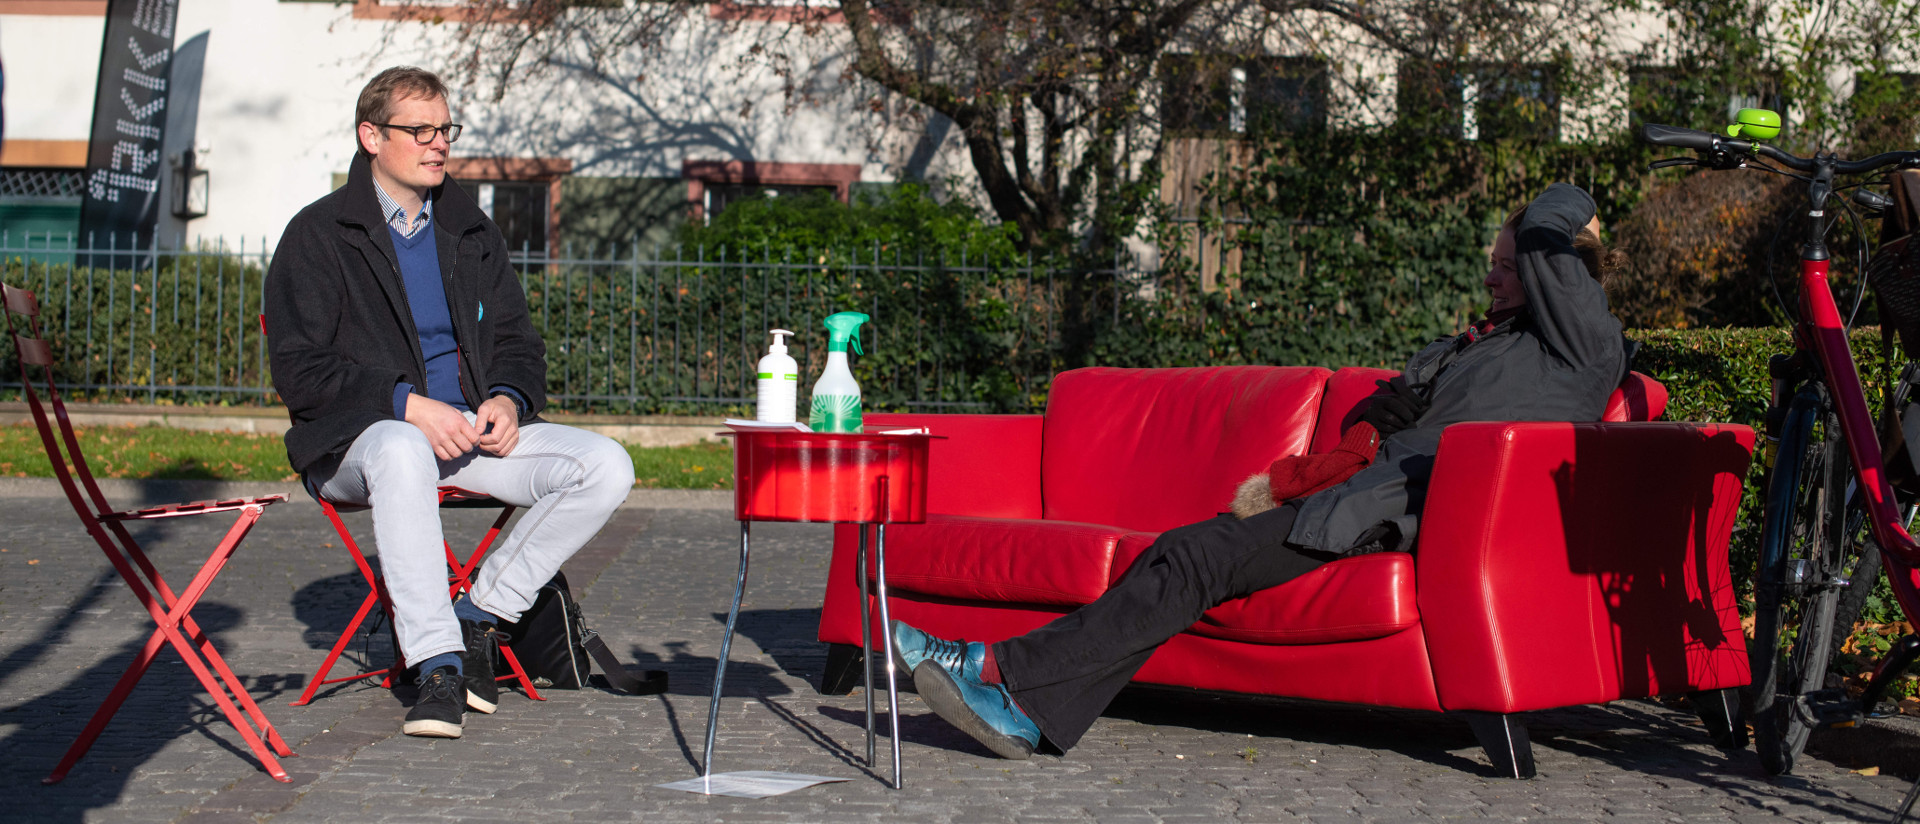 Der Priester Martin Föhn im Gespräch mit einer Passantin auf dem roten Sofa der gleichnamigen Aktion in Basel.